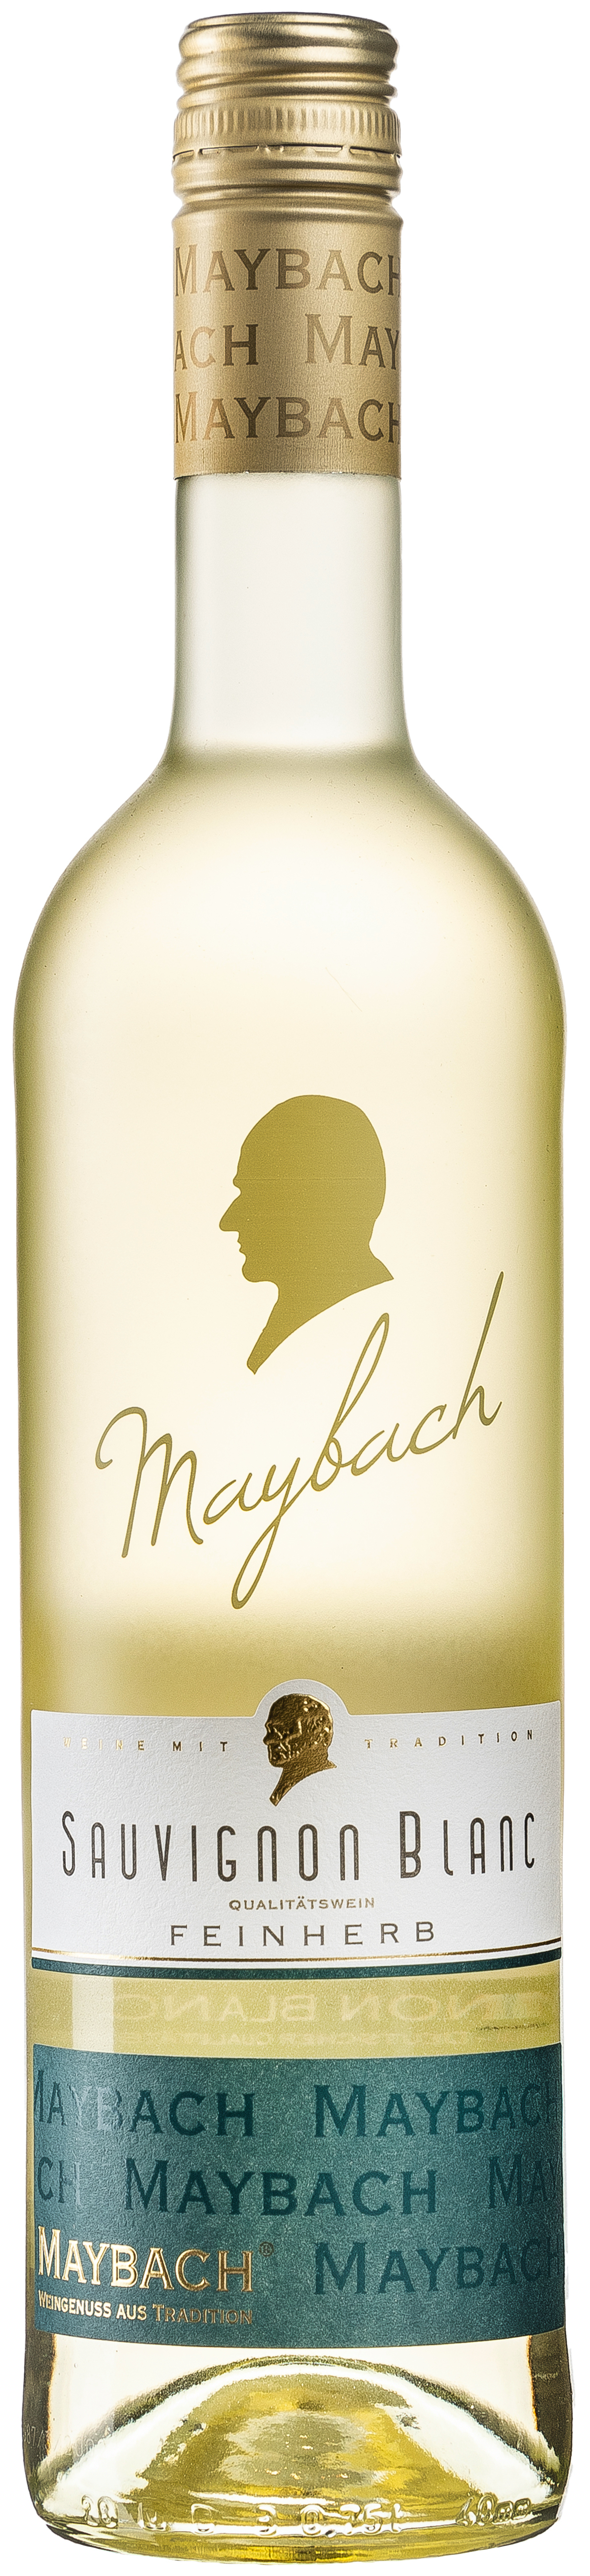 Maybach Sauvignon Blanc feinherb 11% vol. 0,75L